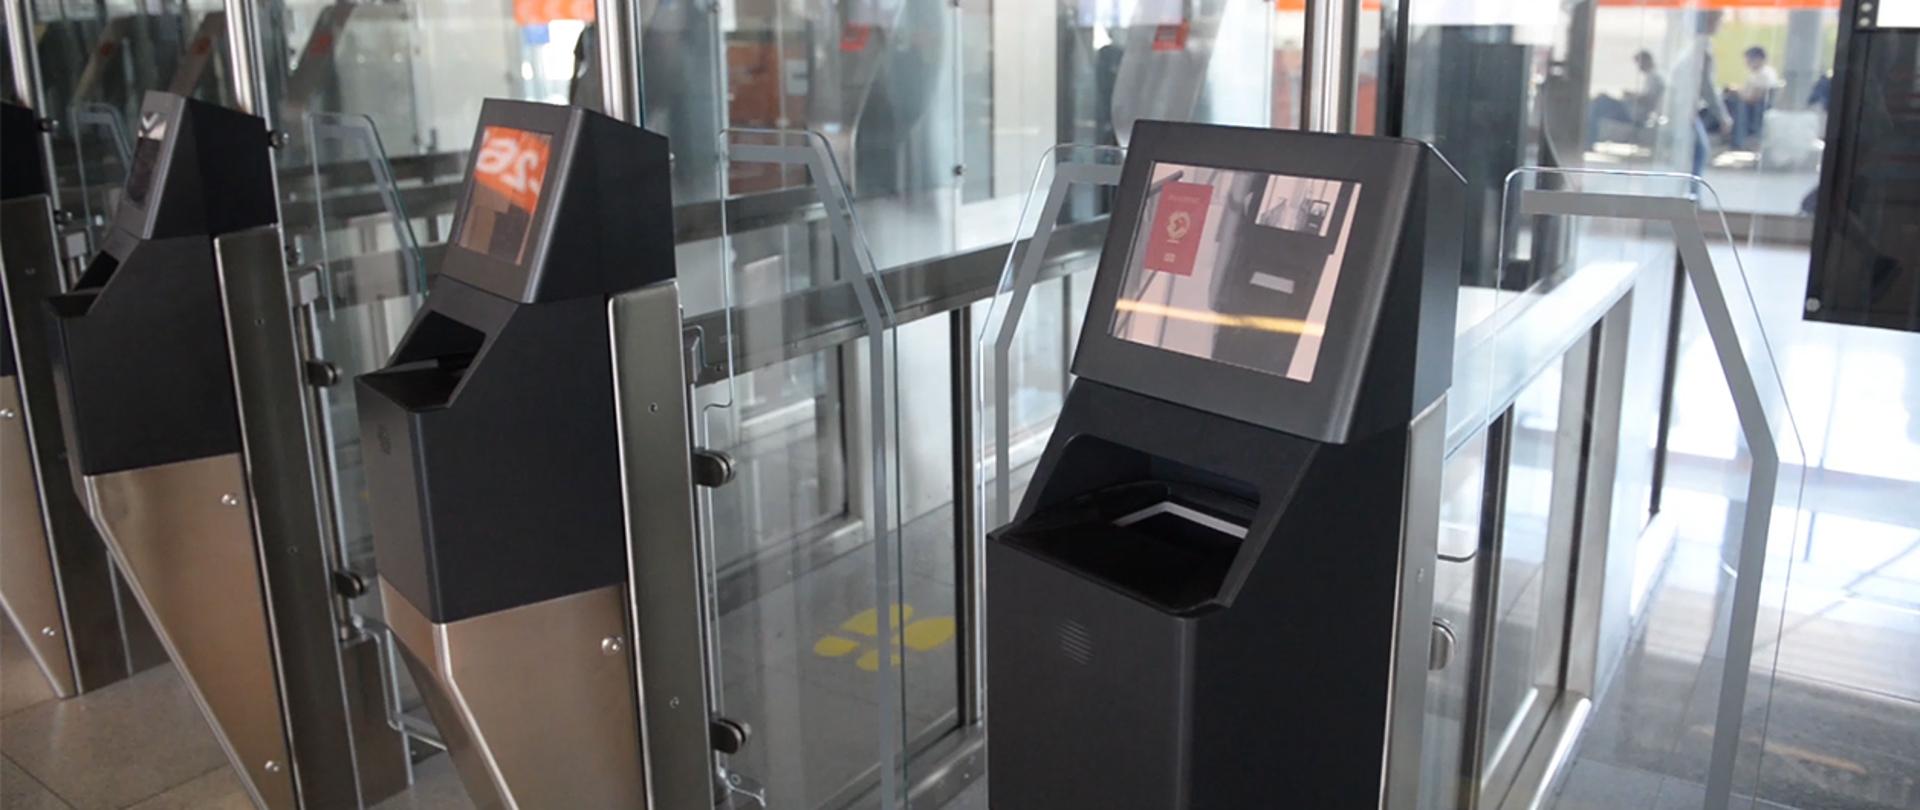 Bramki automatyczne na Lotnisku Chopina w Warszawie